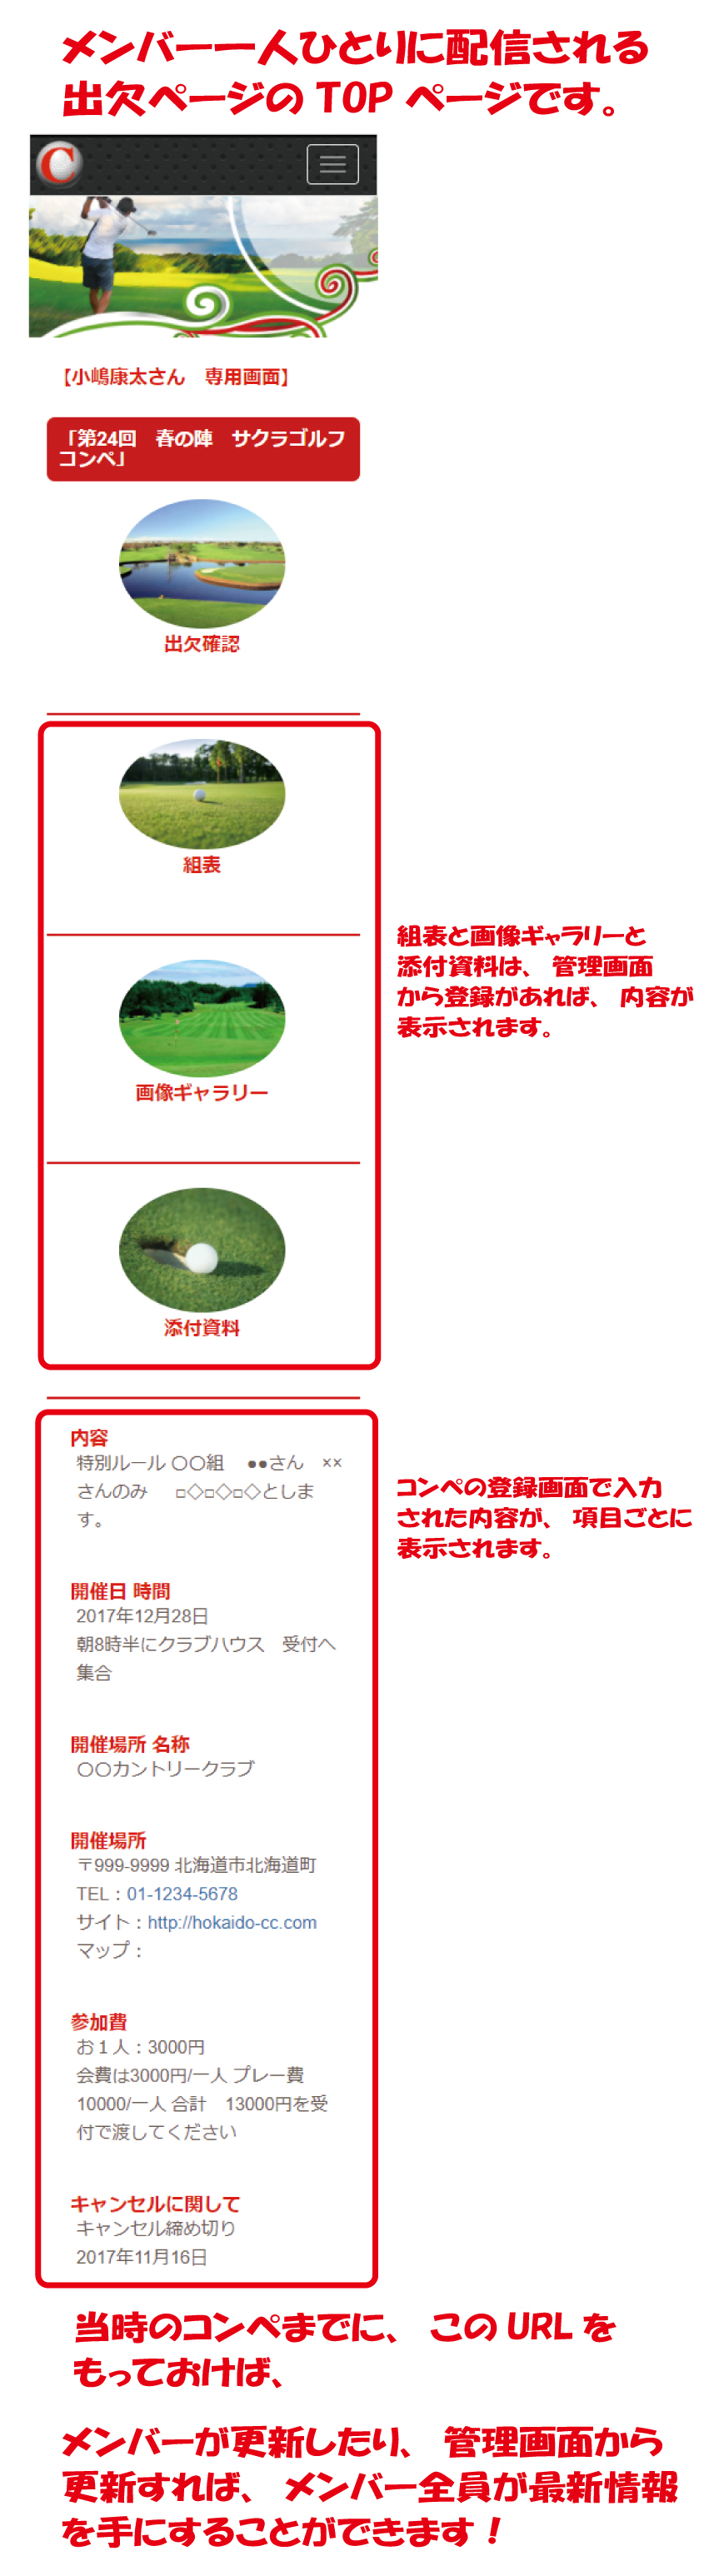 ゴルフコンペグループのメンバー専用画面のTOPページ